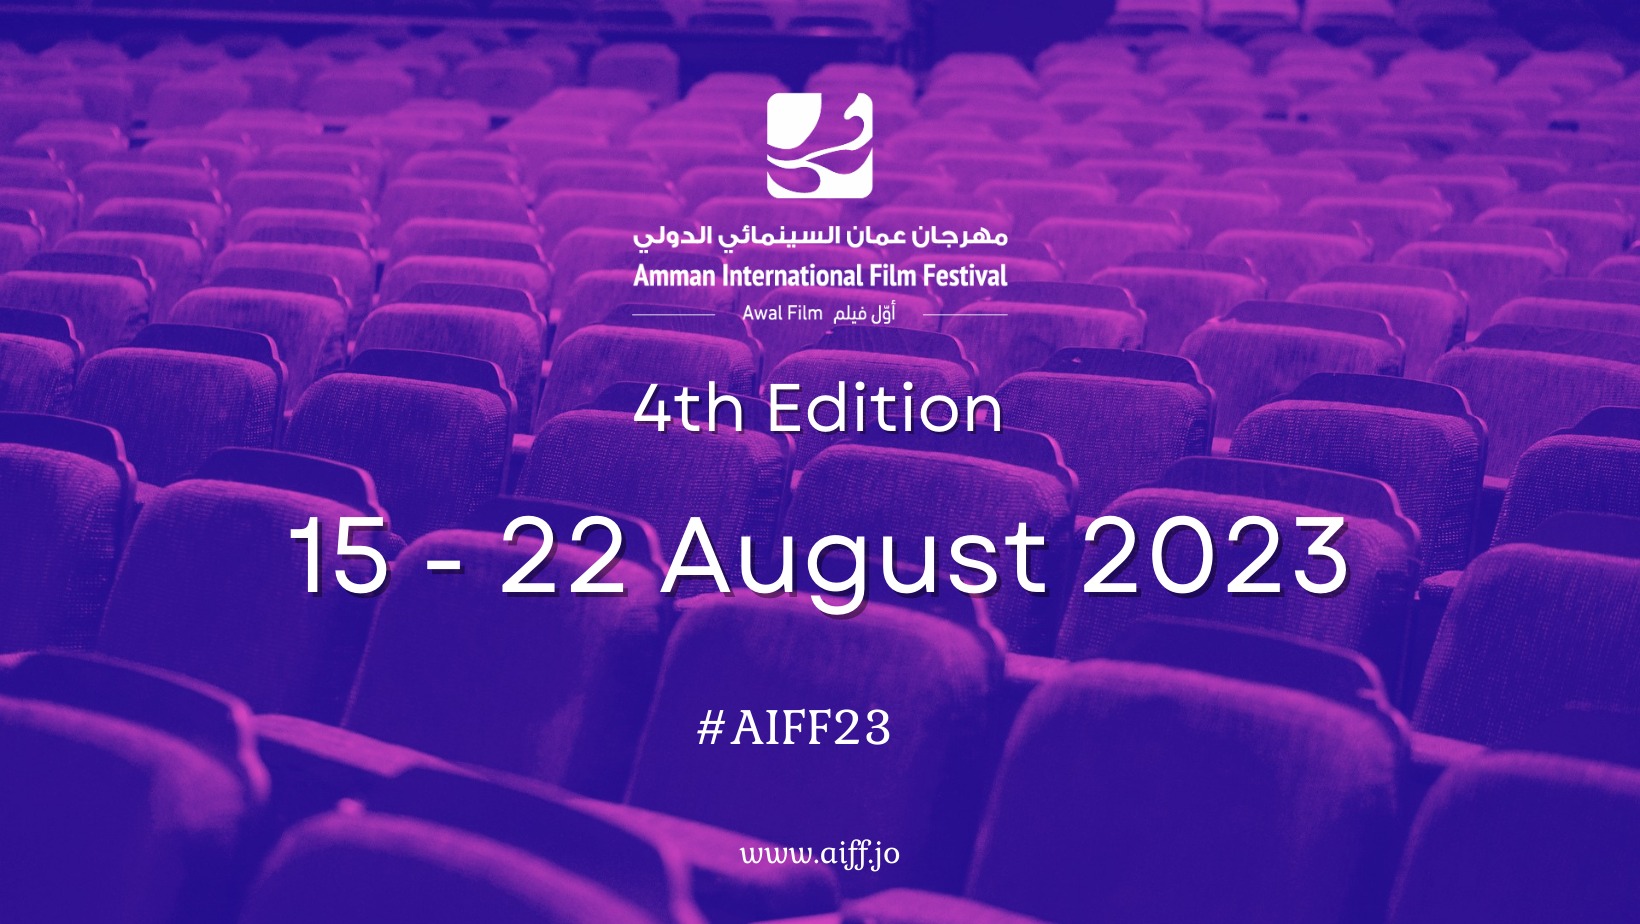 مهرجان عمان السينمائي الدولي يعلن عن دورته القادمة وعن فتح باب التقديم